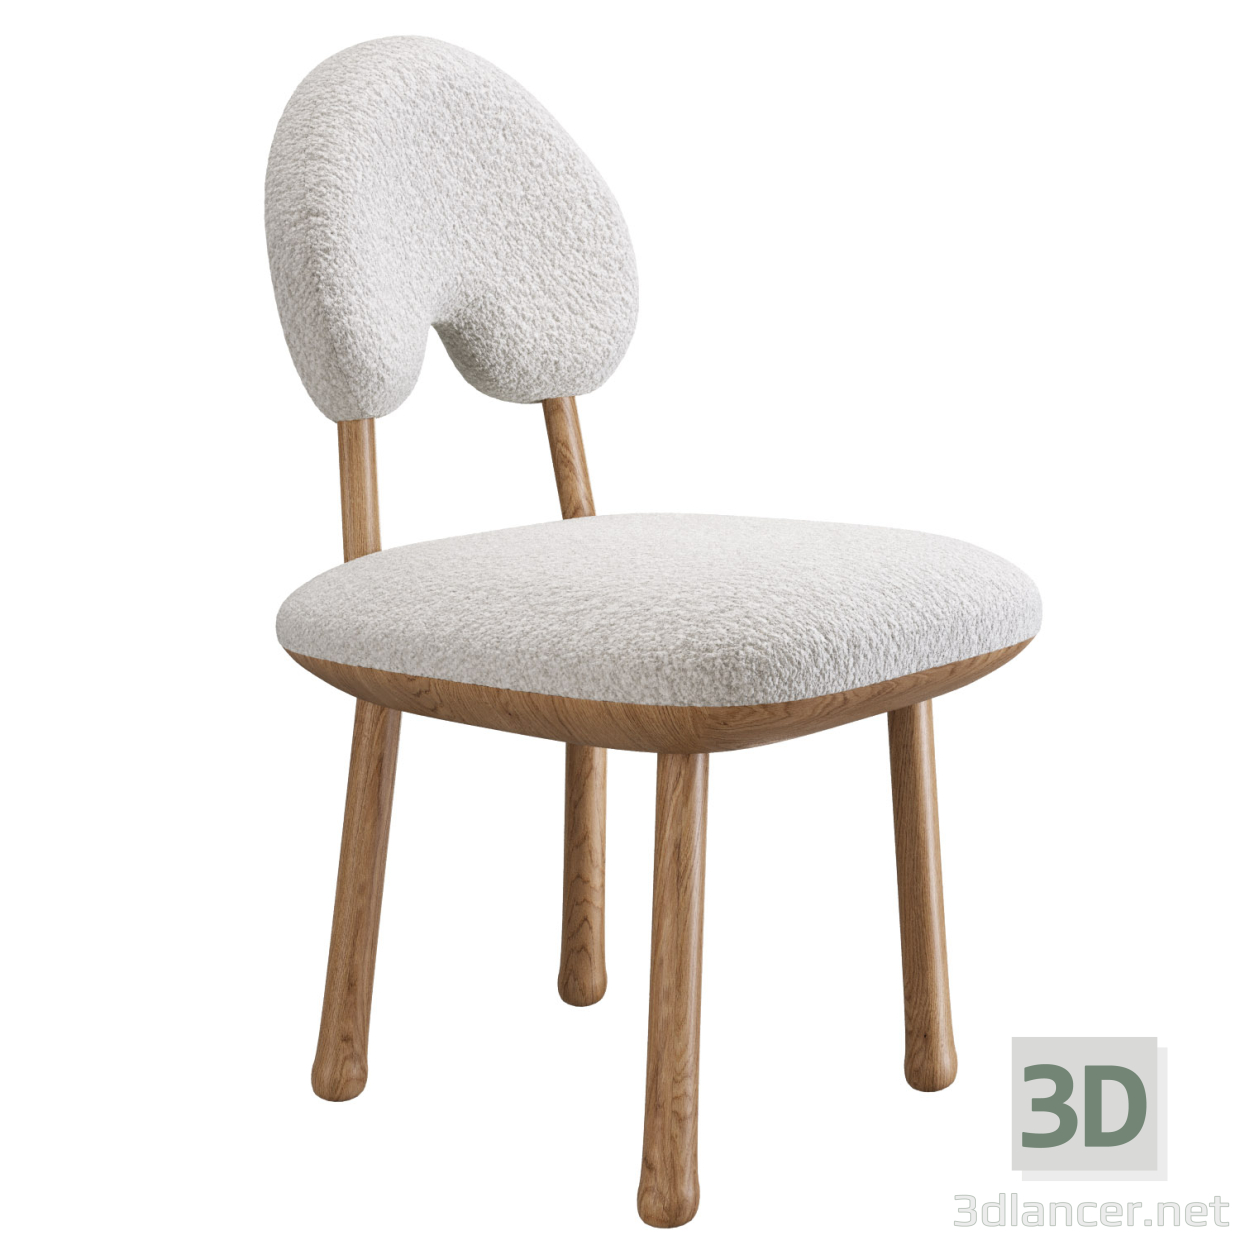 3 डी डिजाइनर मेकअप कुर्सी ठोस लकड़ी की कुर्सी मॉडल खरीद - रेंडर